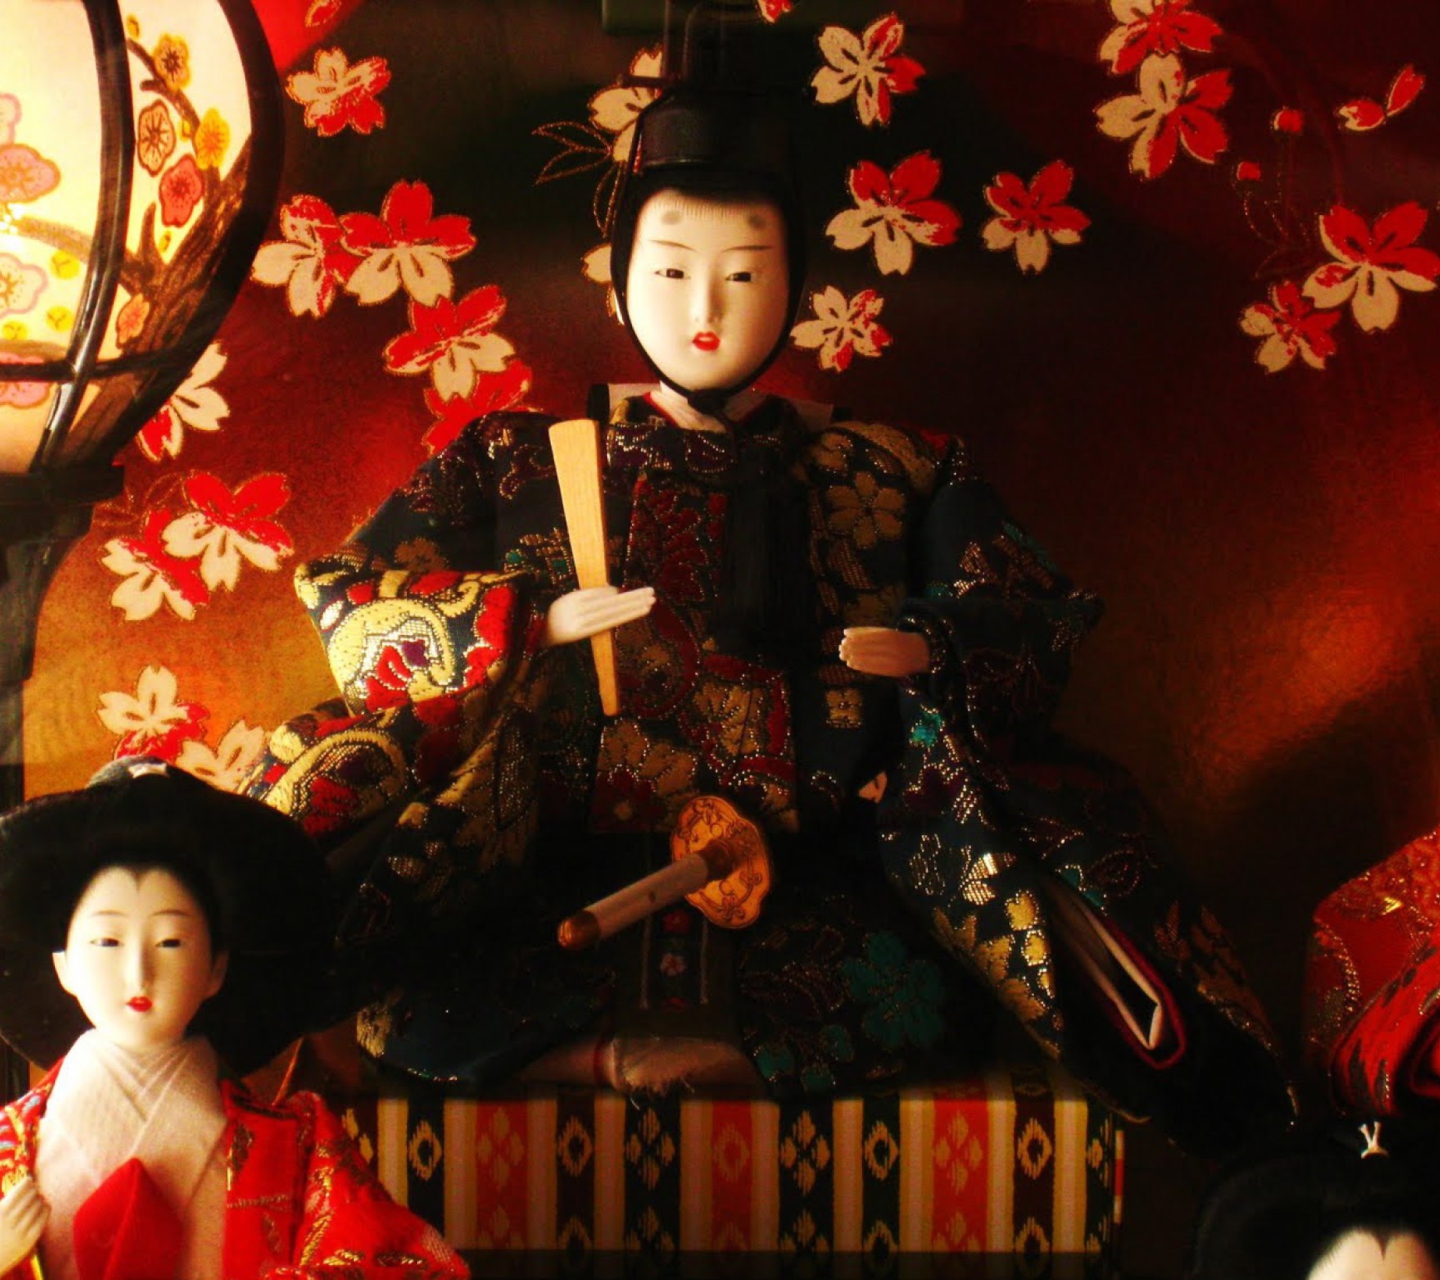 Japanese Doll Festival wallpaper 1440x1280